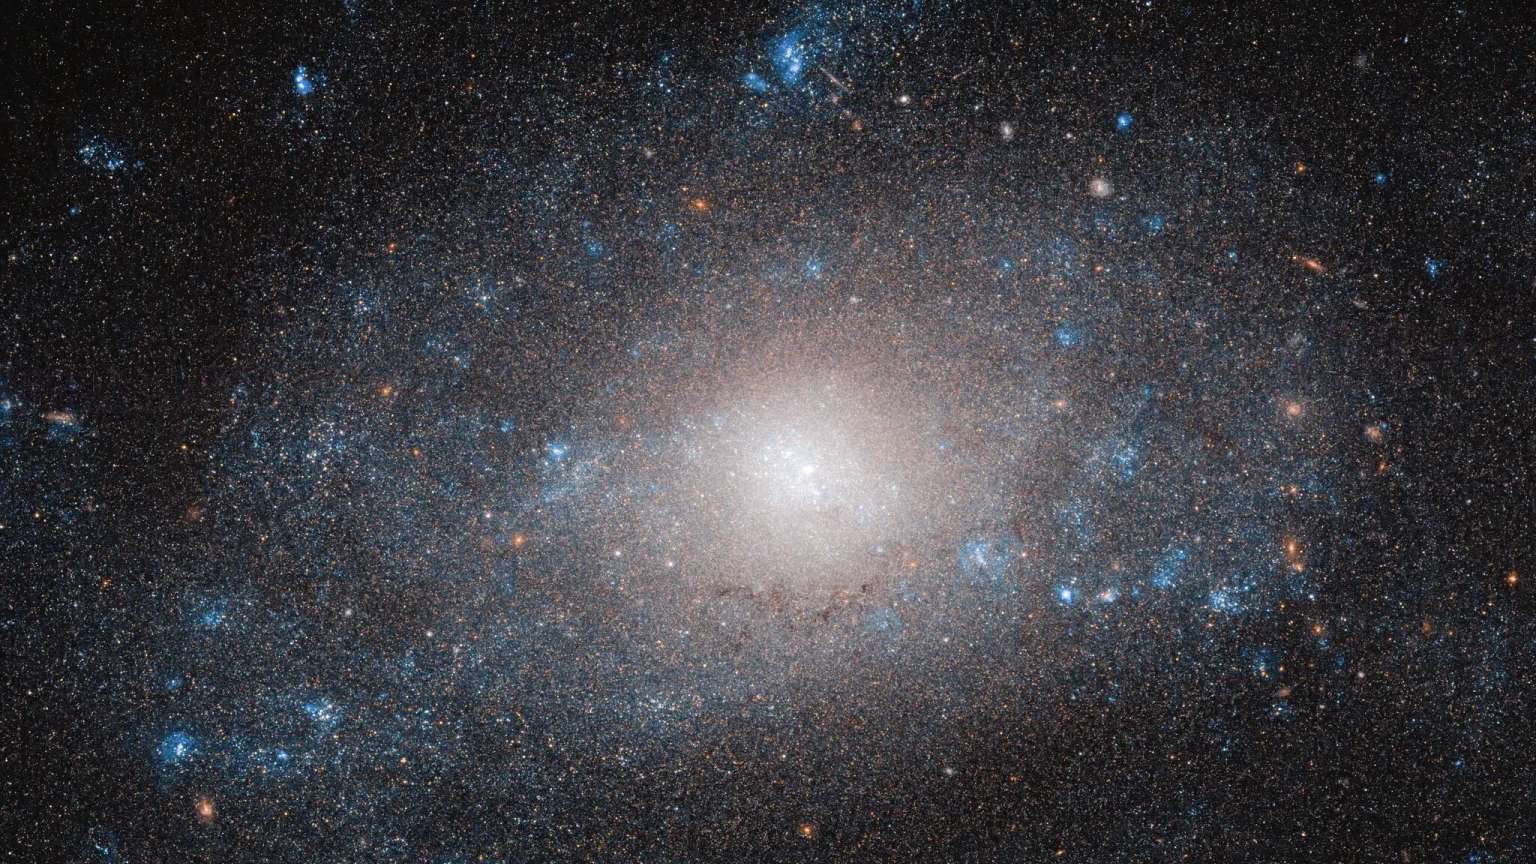 Na cauda do animal representado na Constelação da Ursa Maior, está NGC 5585, uma galáxia espiral que é mais do que parece. As muitas estrelas e nuvens de poeira e gás que constituem a NGC 5585 contribuem apenas com uma pequena fração da massa total da galáxia. Essa discrepância pode ser explicada pela presença abundante, mas aparentemente invisível, de matéria escura, um material misterioso que os astrônomos não conseguem observar diretamente. O disco da galáxia estende-se por mais de 35 mil anos-luz. Pontos quentes de formação estelar, em azul brilhante, aparecem ao longo dos braços espirais da galáxia